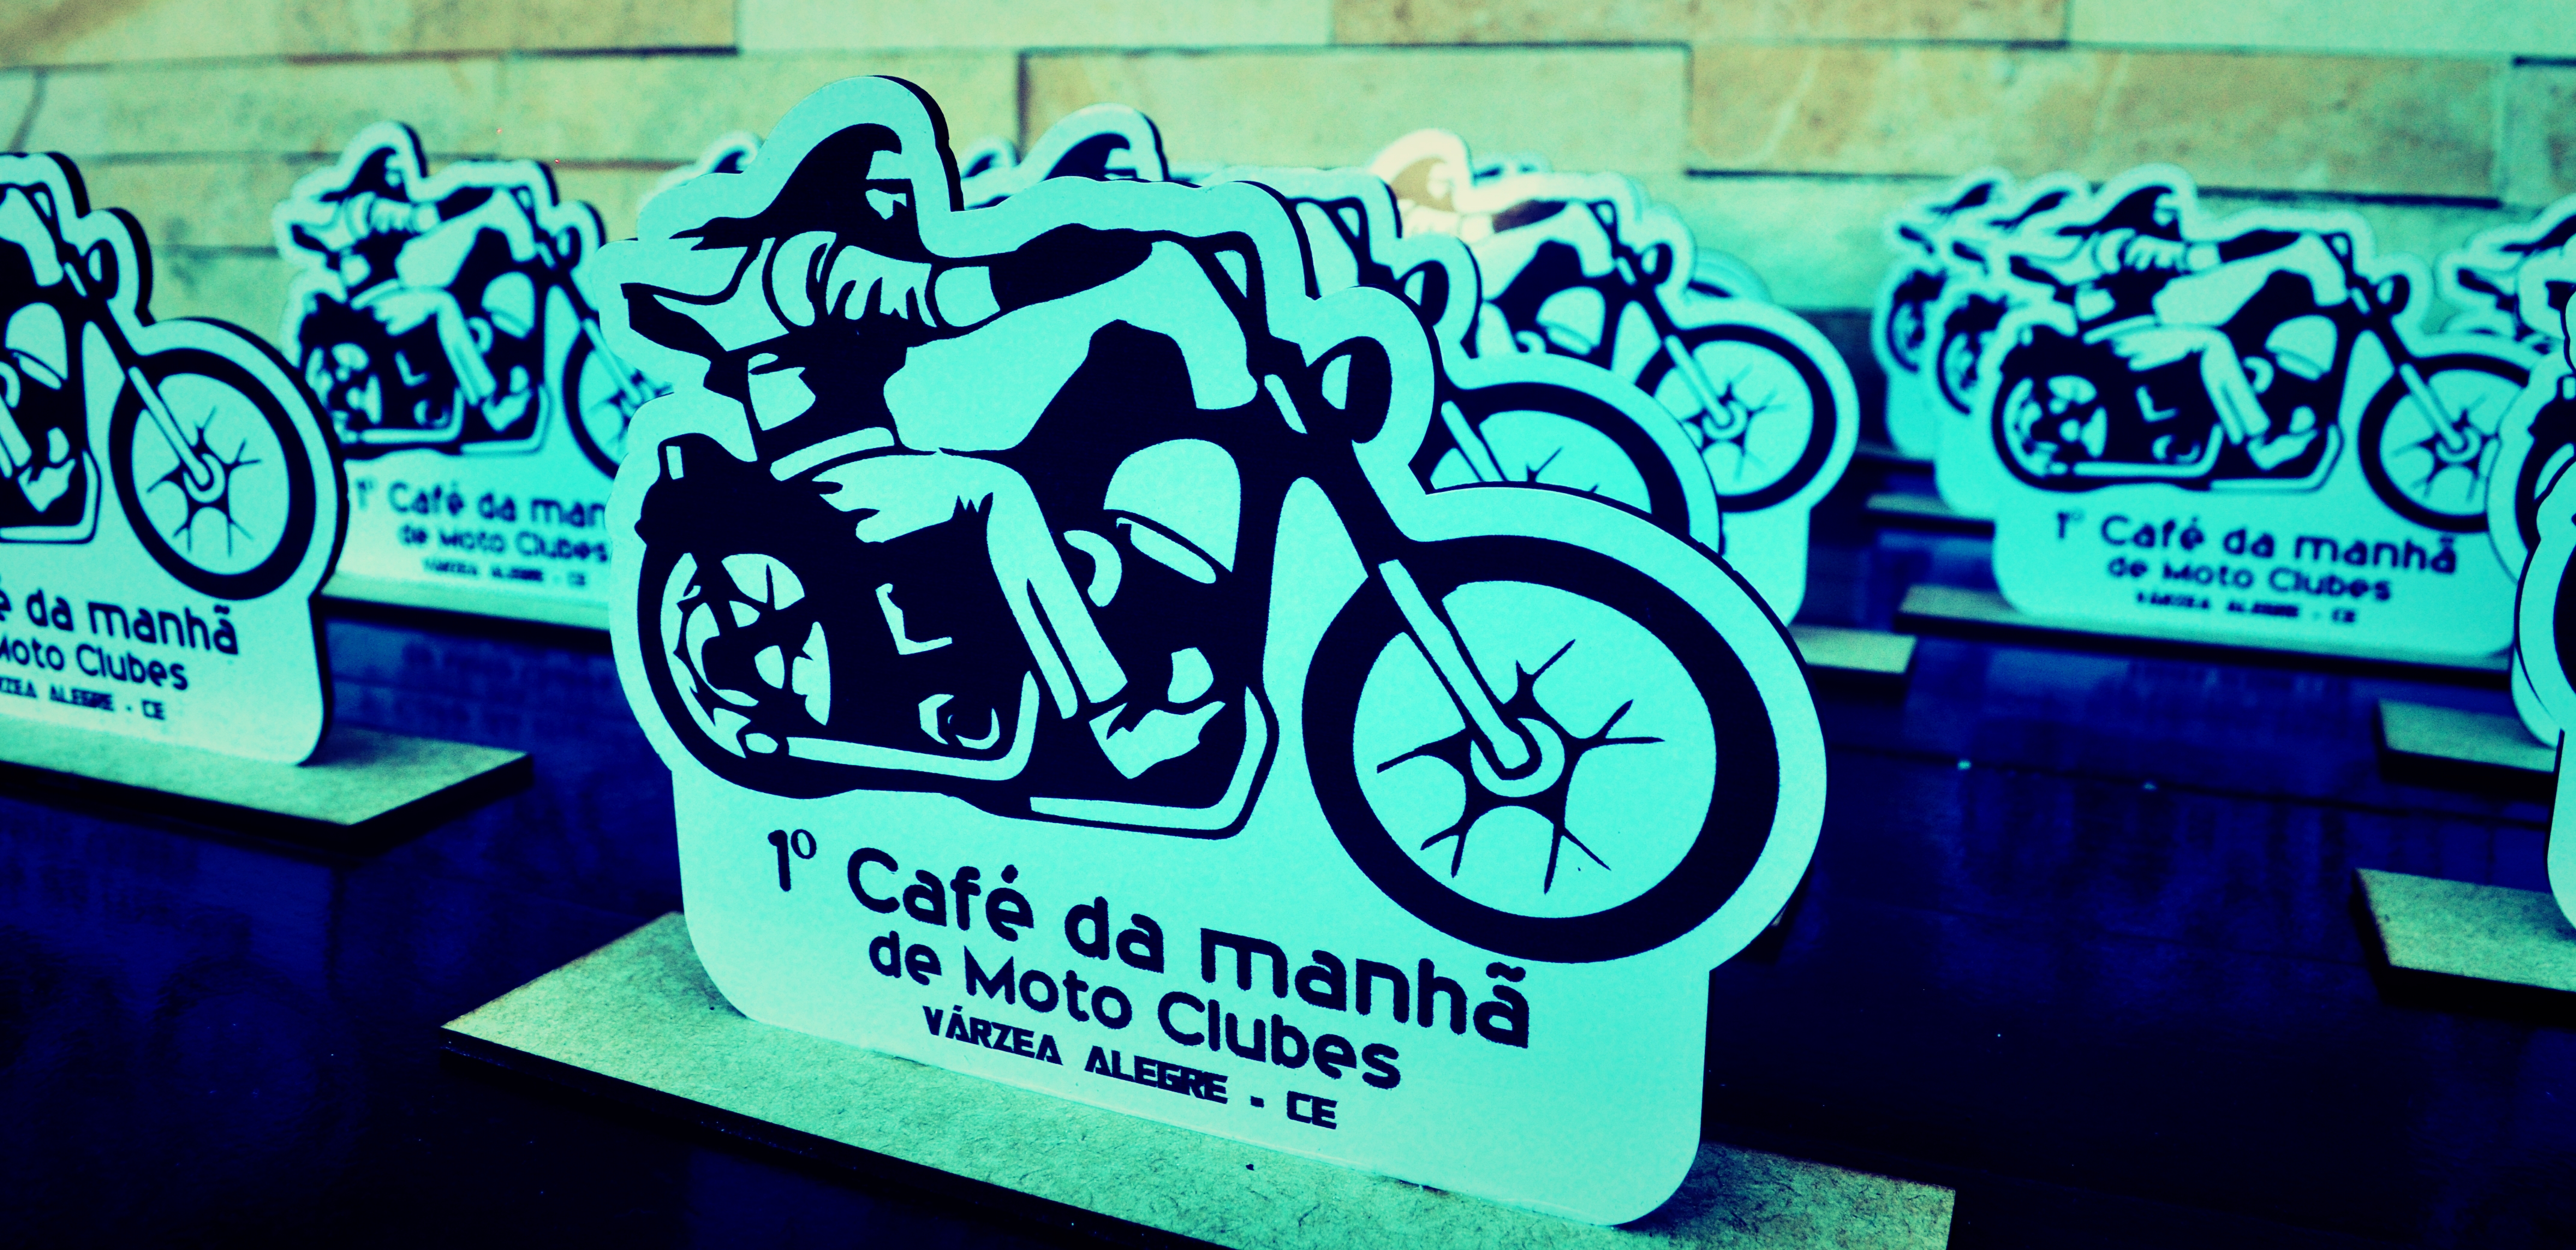 Café da manhã para motociclistas coloca Várzea Alegre no circuito de eventos